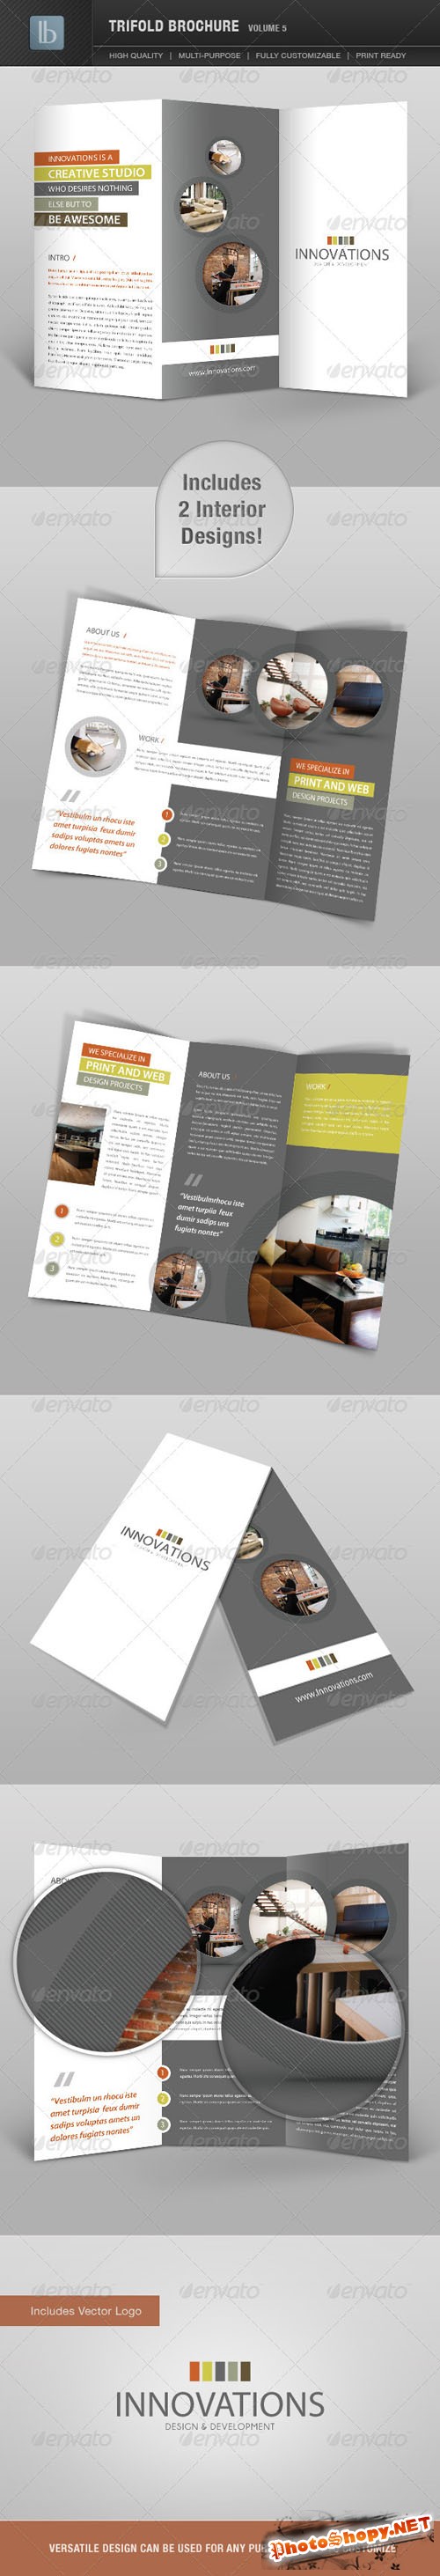 GraphicRiver - Trifold Brochure | Volume 5 - 2363921